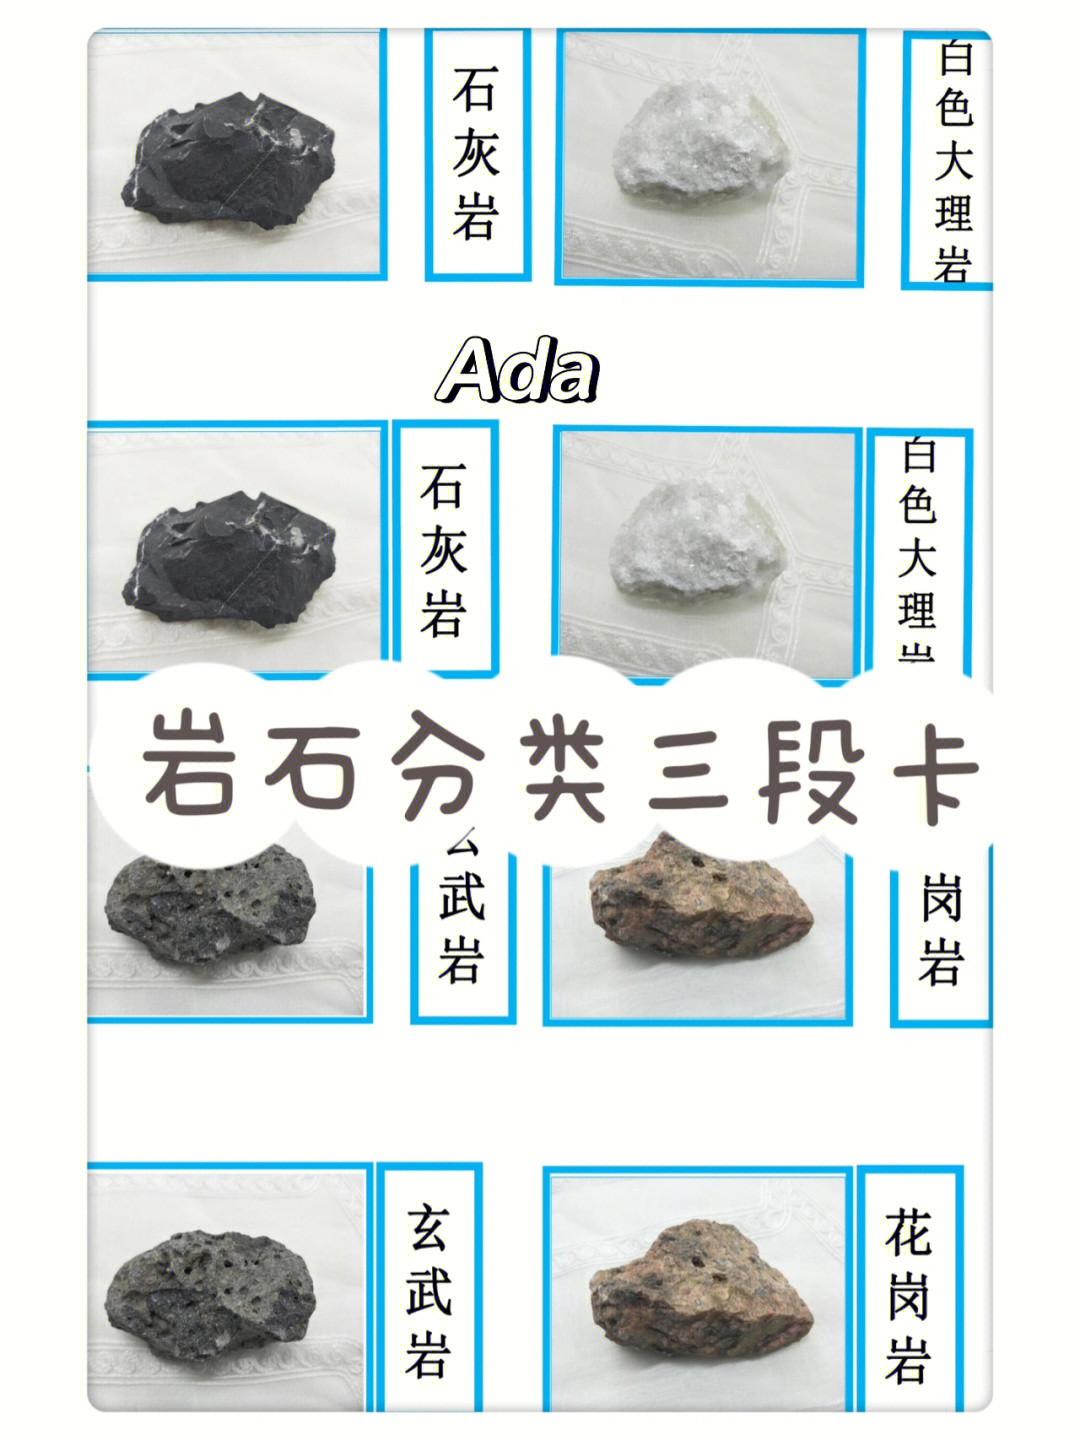 岩石分类酸碱性图片